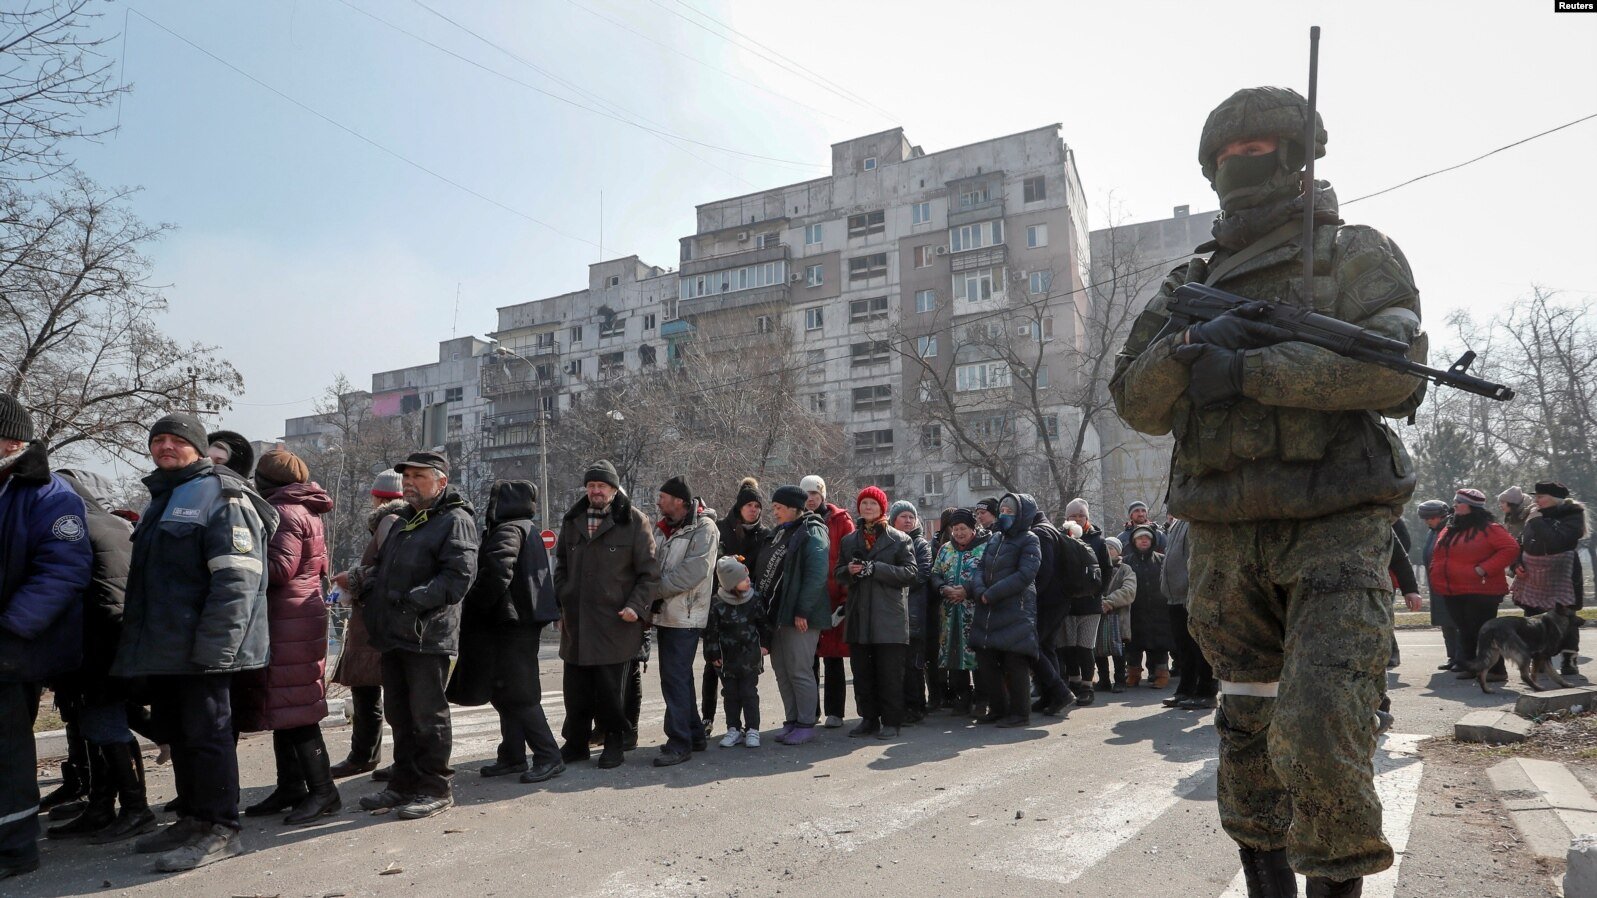 росія створює фільтраційні табори, щоб знищити українську ідентичність,  - The Economist